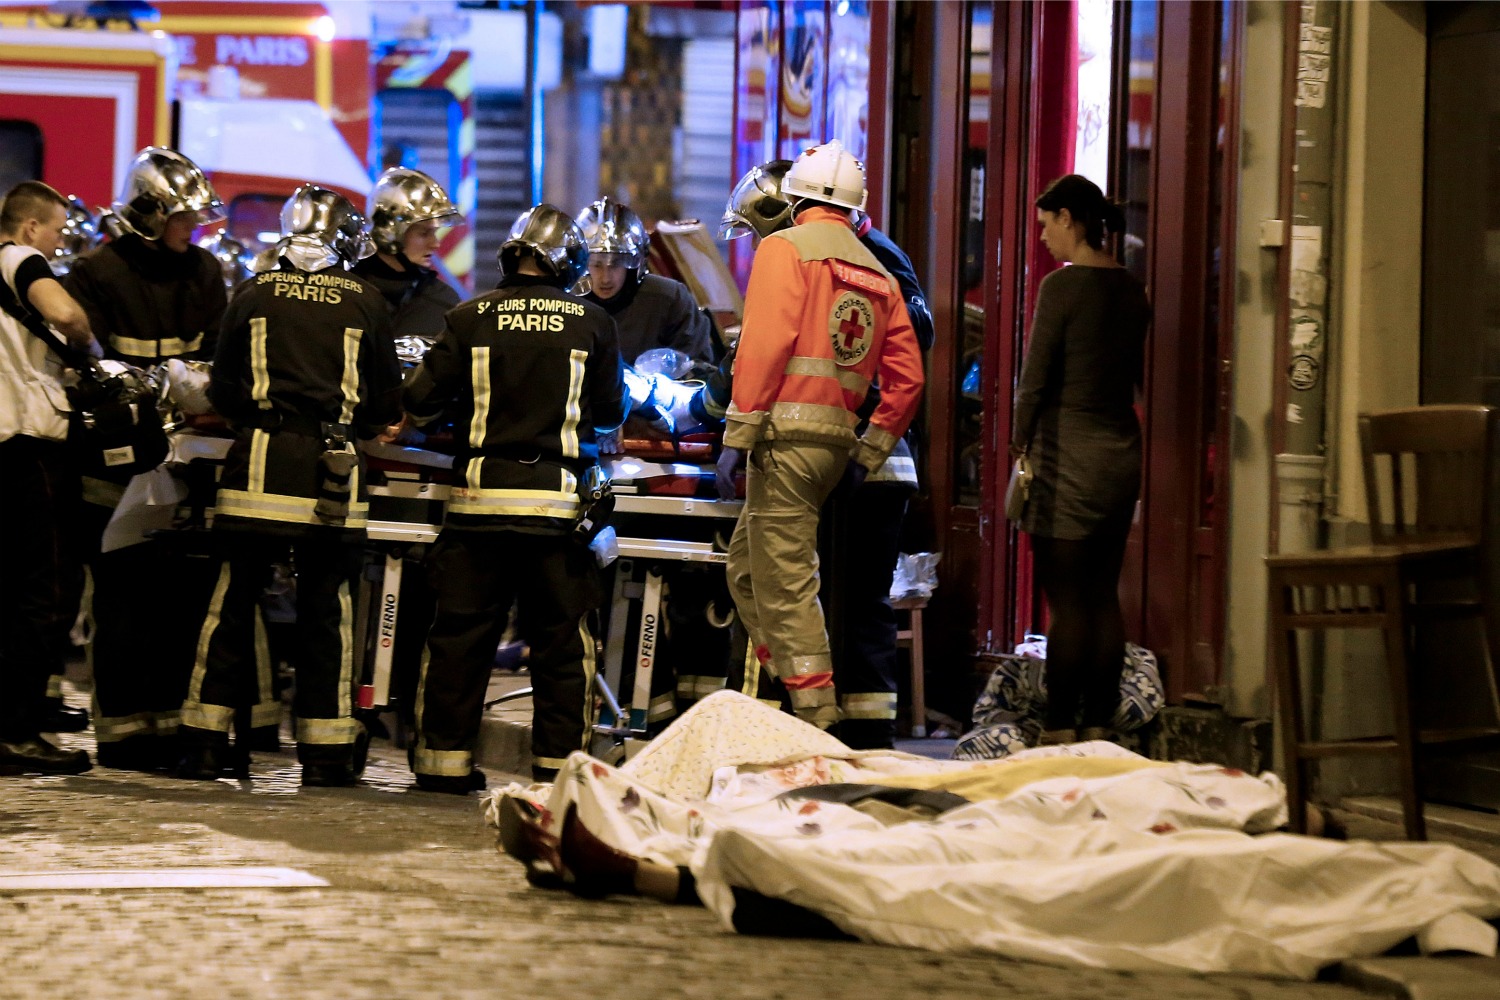 El terror en París, sin comentarios